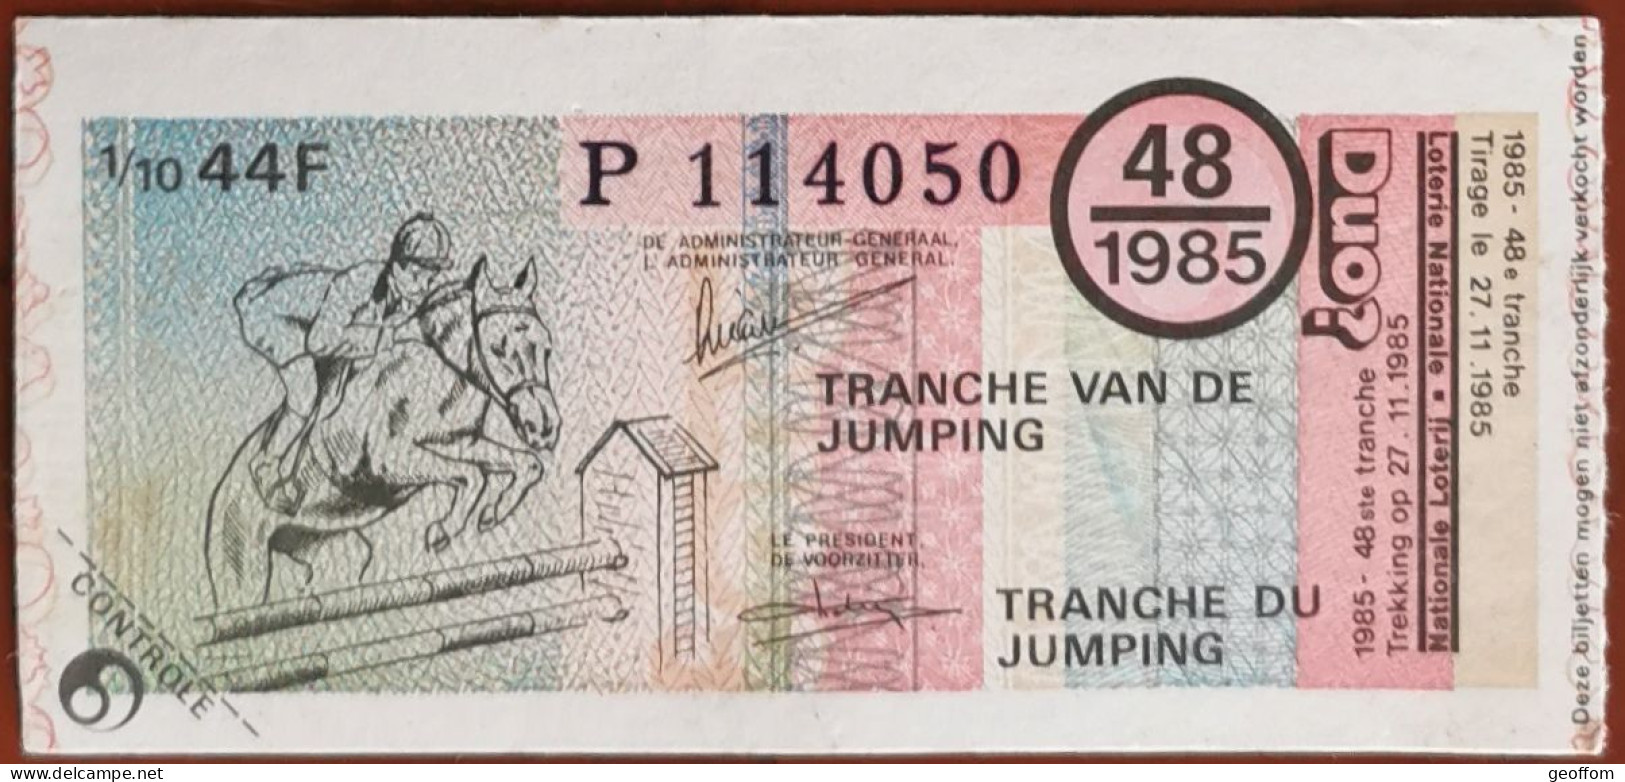 Billet De Loterie Nationale Belgique 1985 48e Tranche Du Jumping - 27-11-1985 - Billetes De Lotería